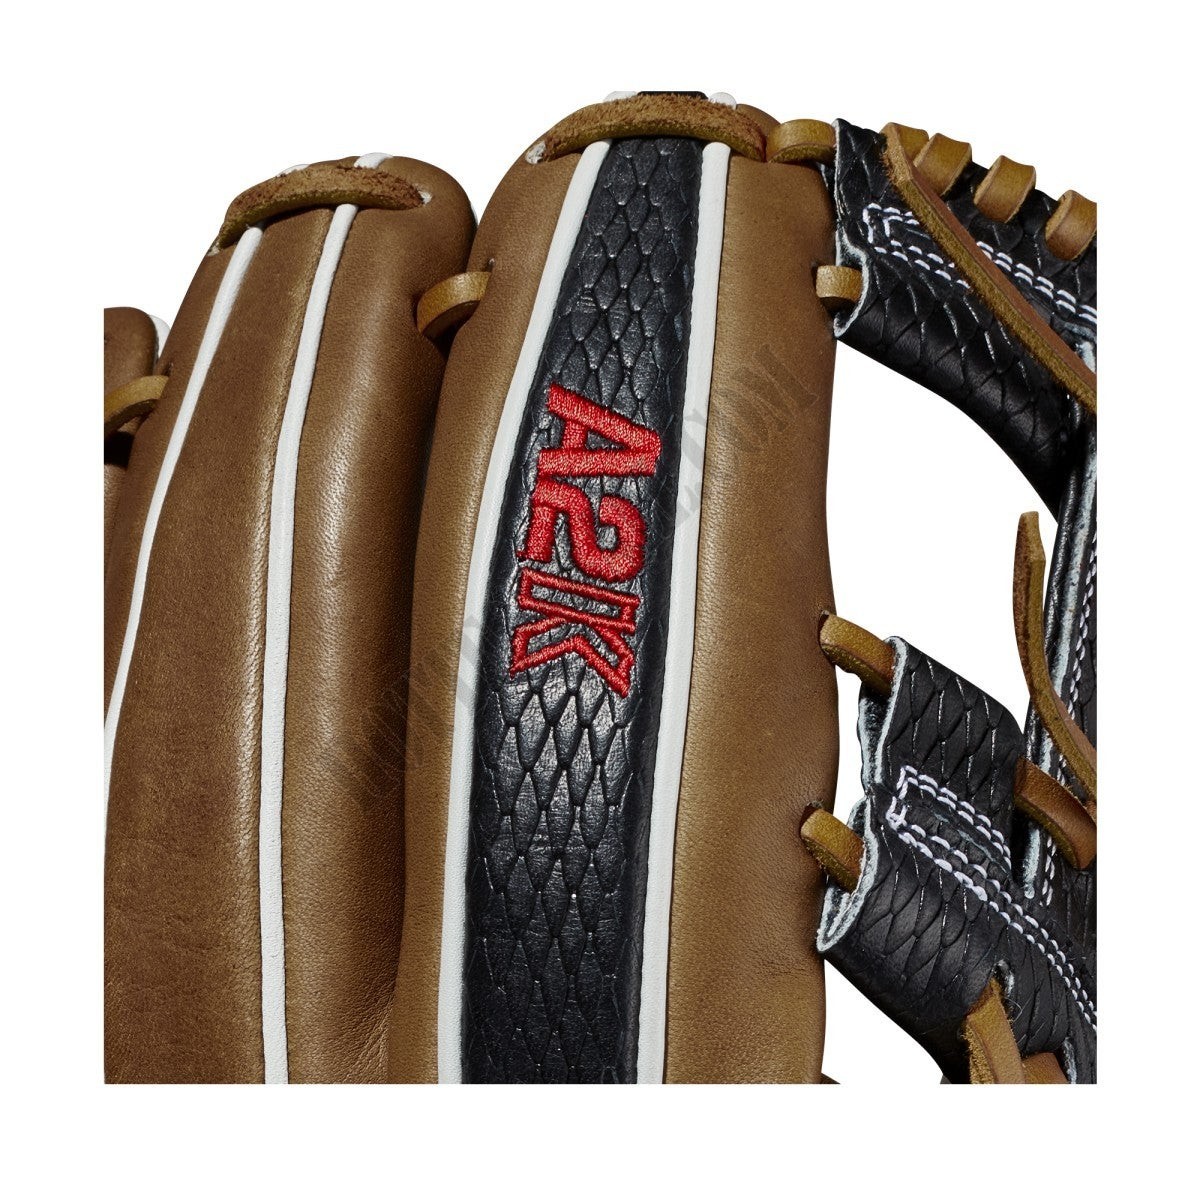 2021 A2K 1787 11.75" Infield Baseball Glove ● Wilson Promotions - -6